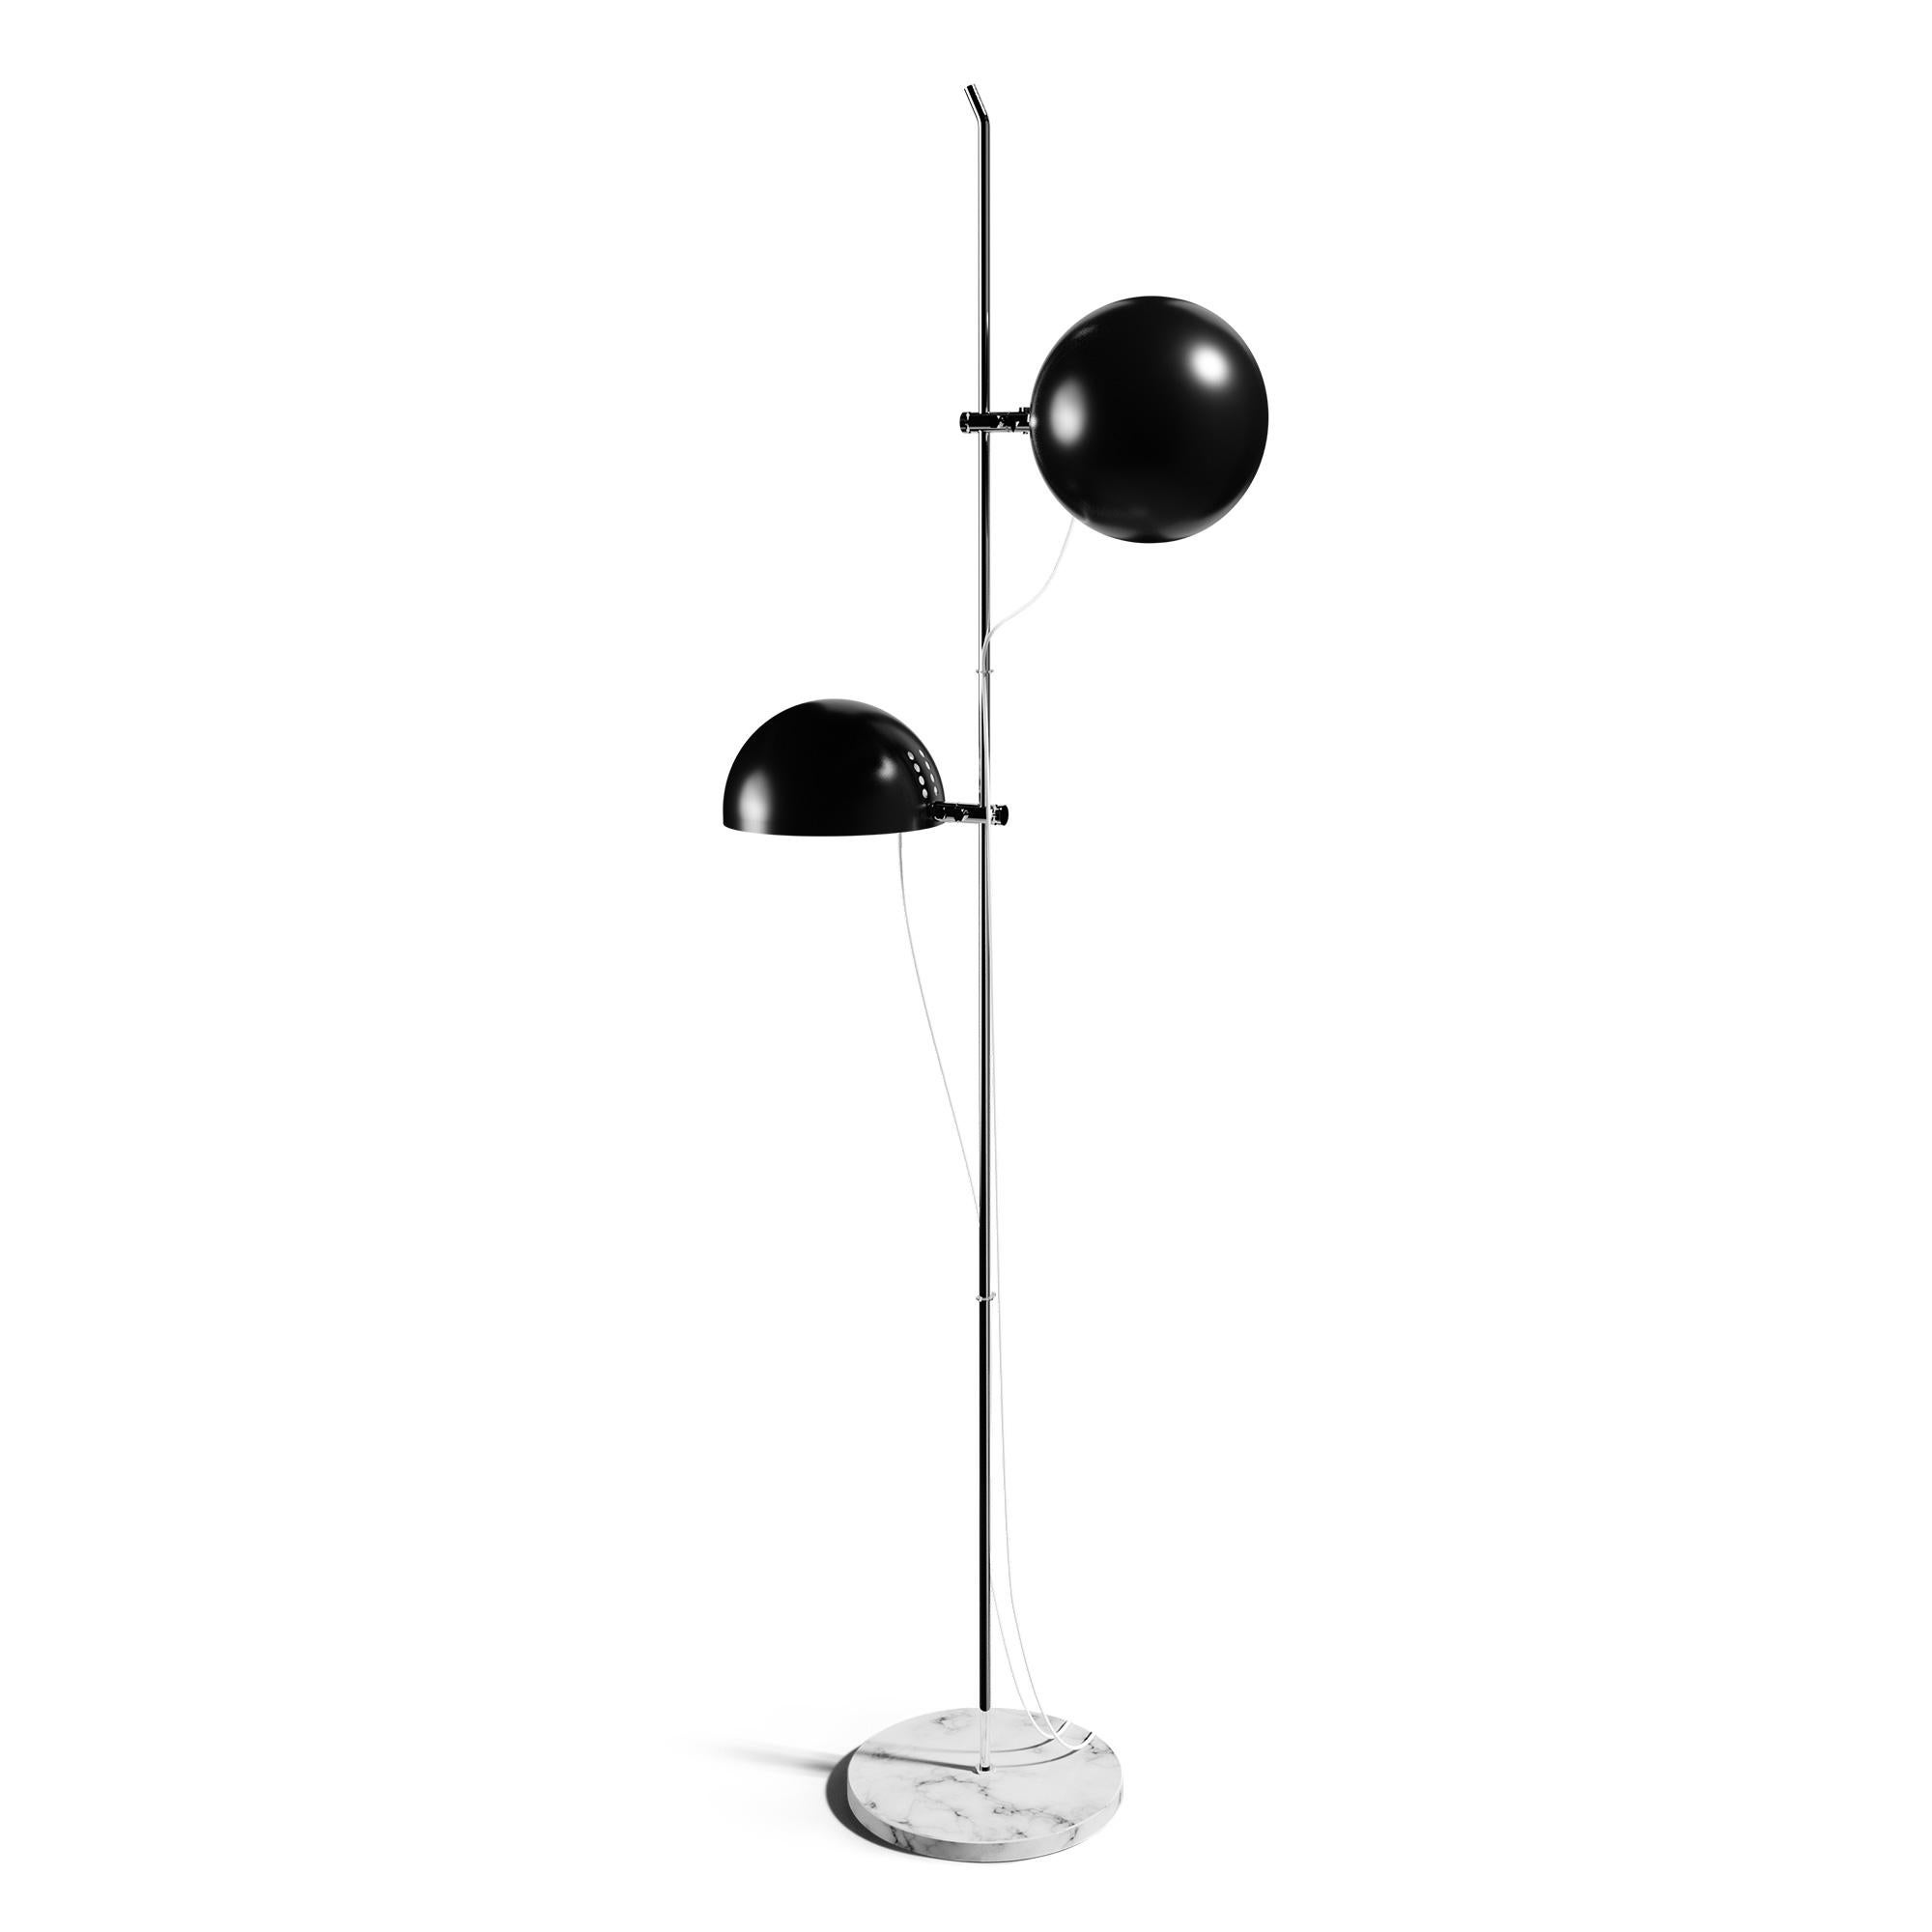 Alain Richard 'A22' Desk Lamp in Black for Disderot For Sale 11